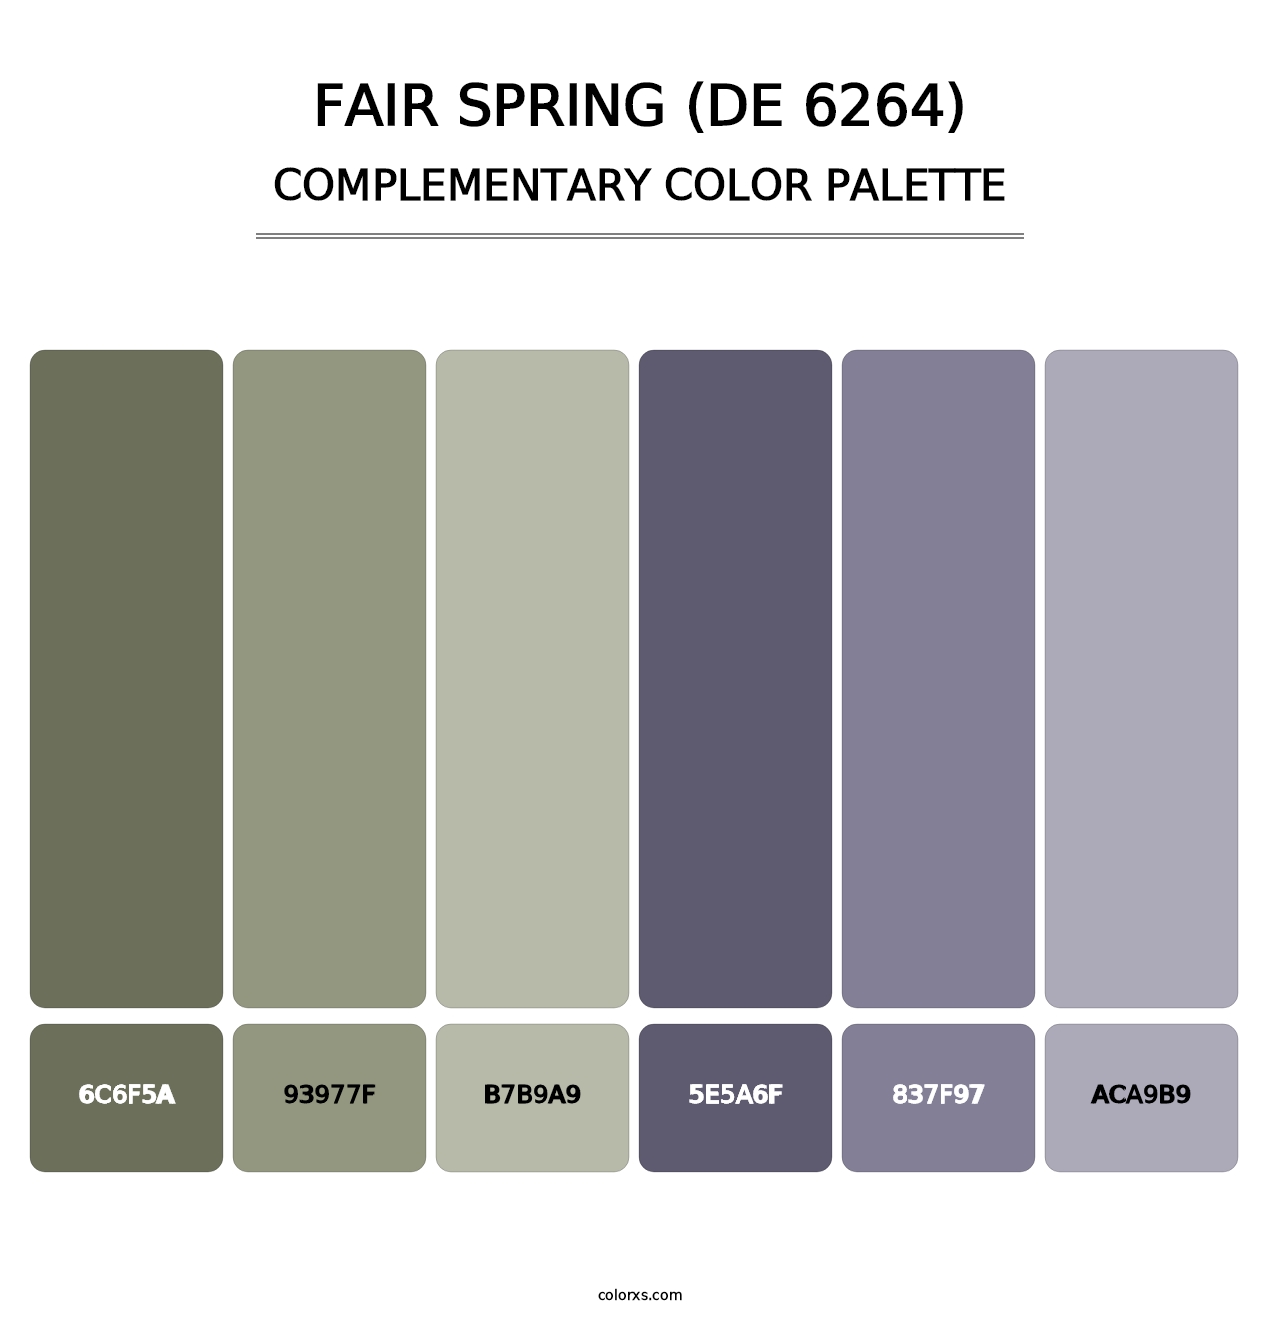 Fair Spring (DE 6264) - Complementary Color Palette